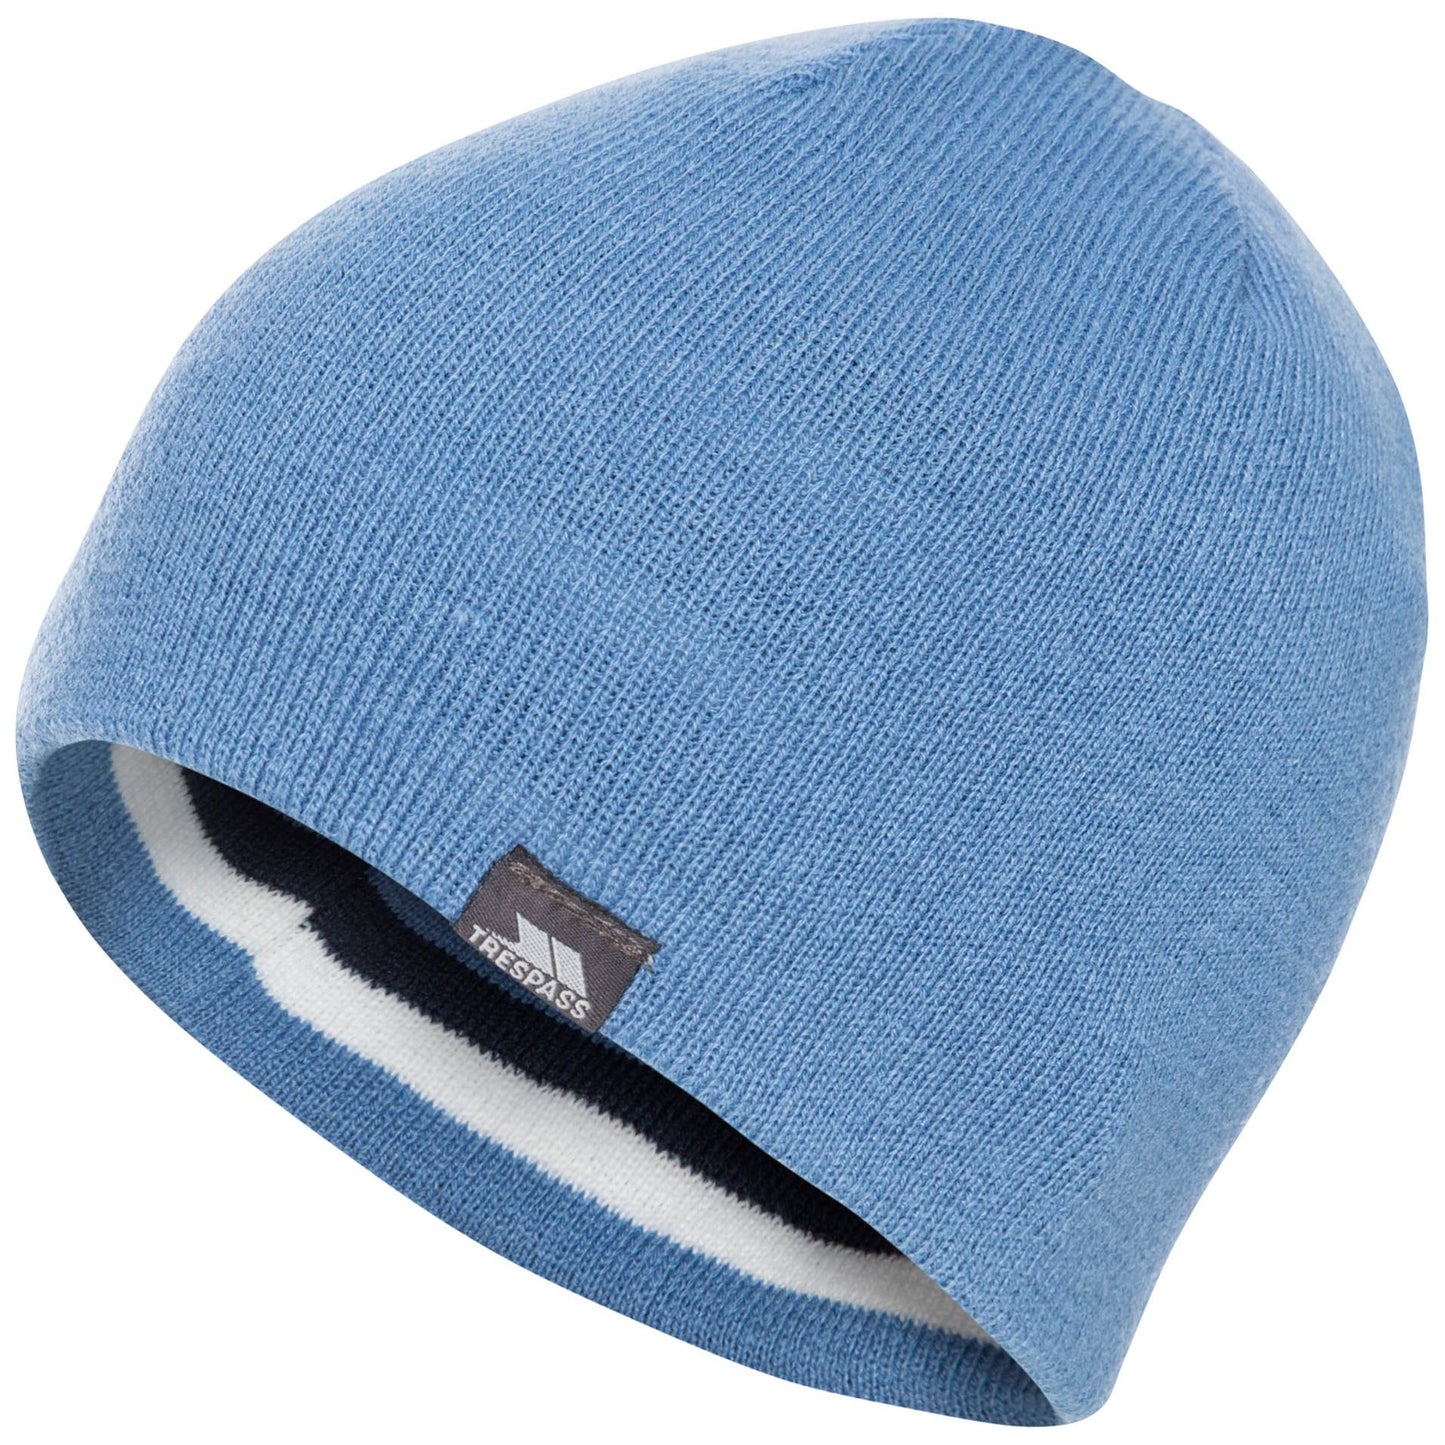 Kezia Women's Reversible Beanie Hat - Denim Blue